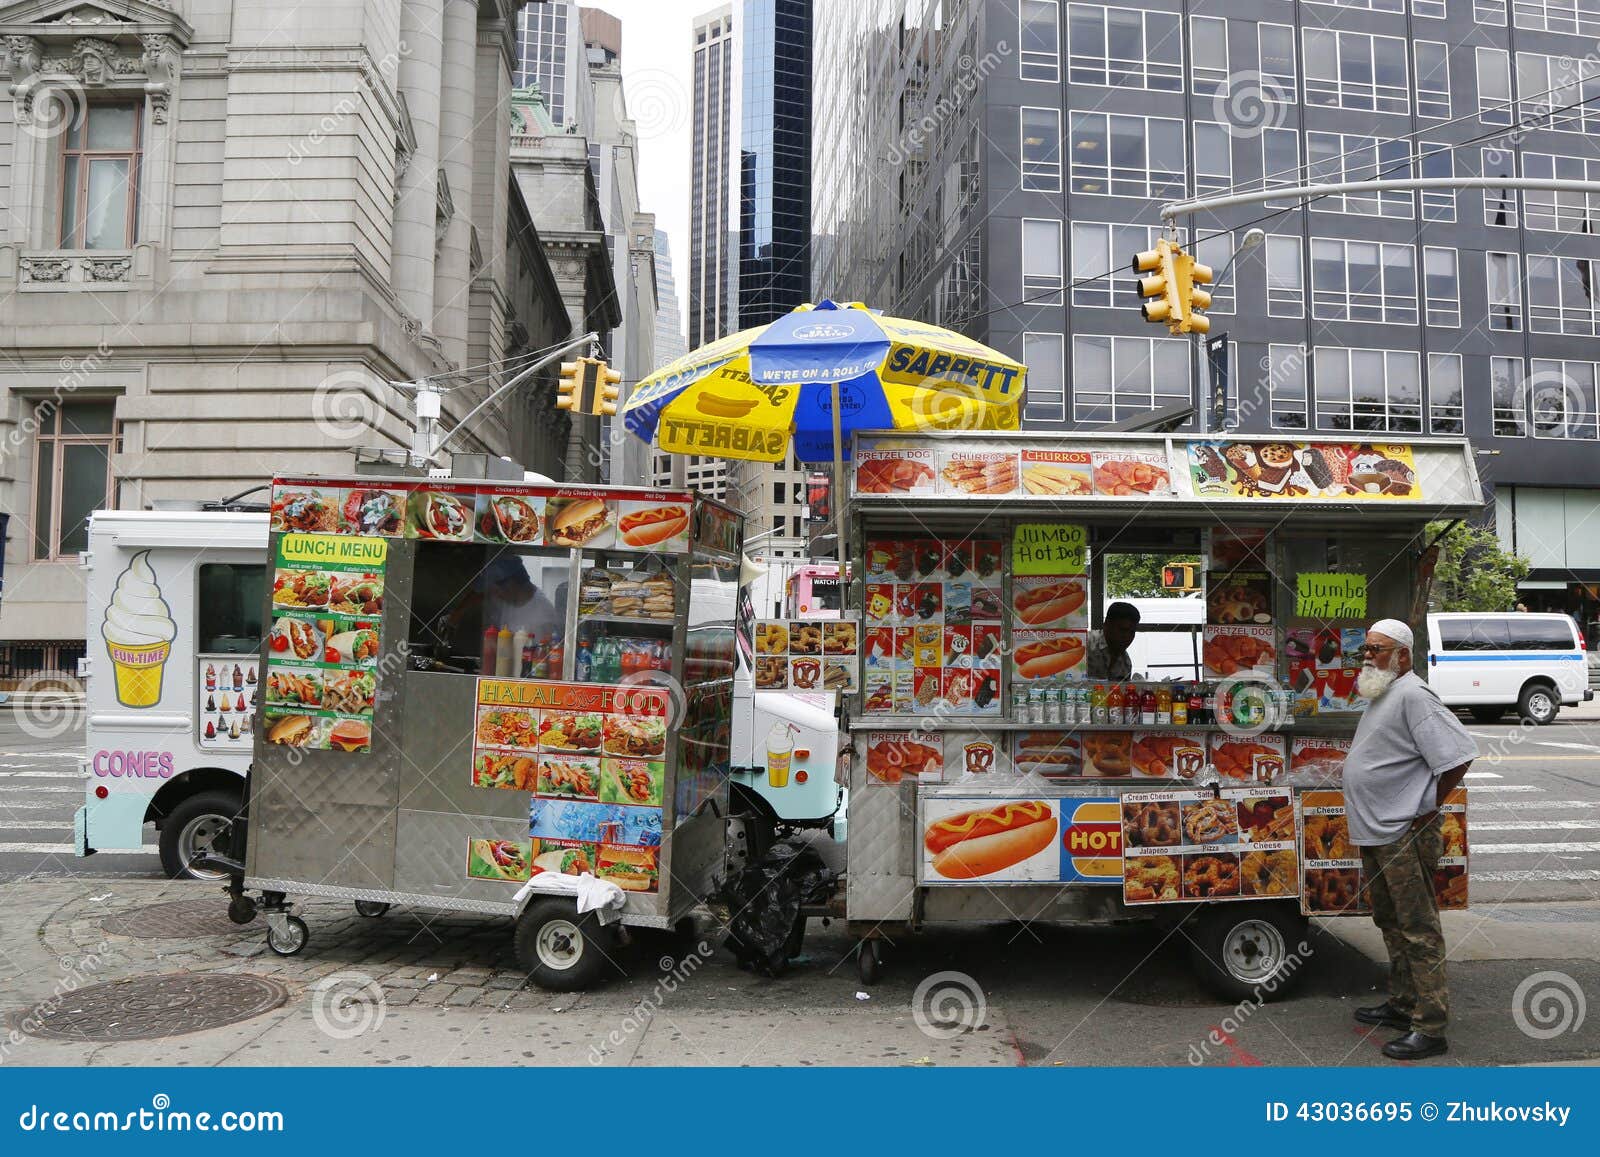 Street Vendor Cart In Manhattan Editorial Image  Image: 43036695